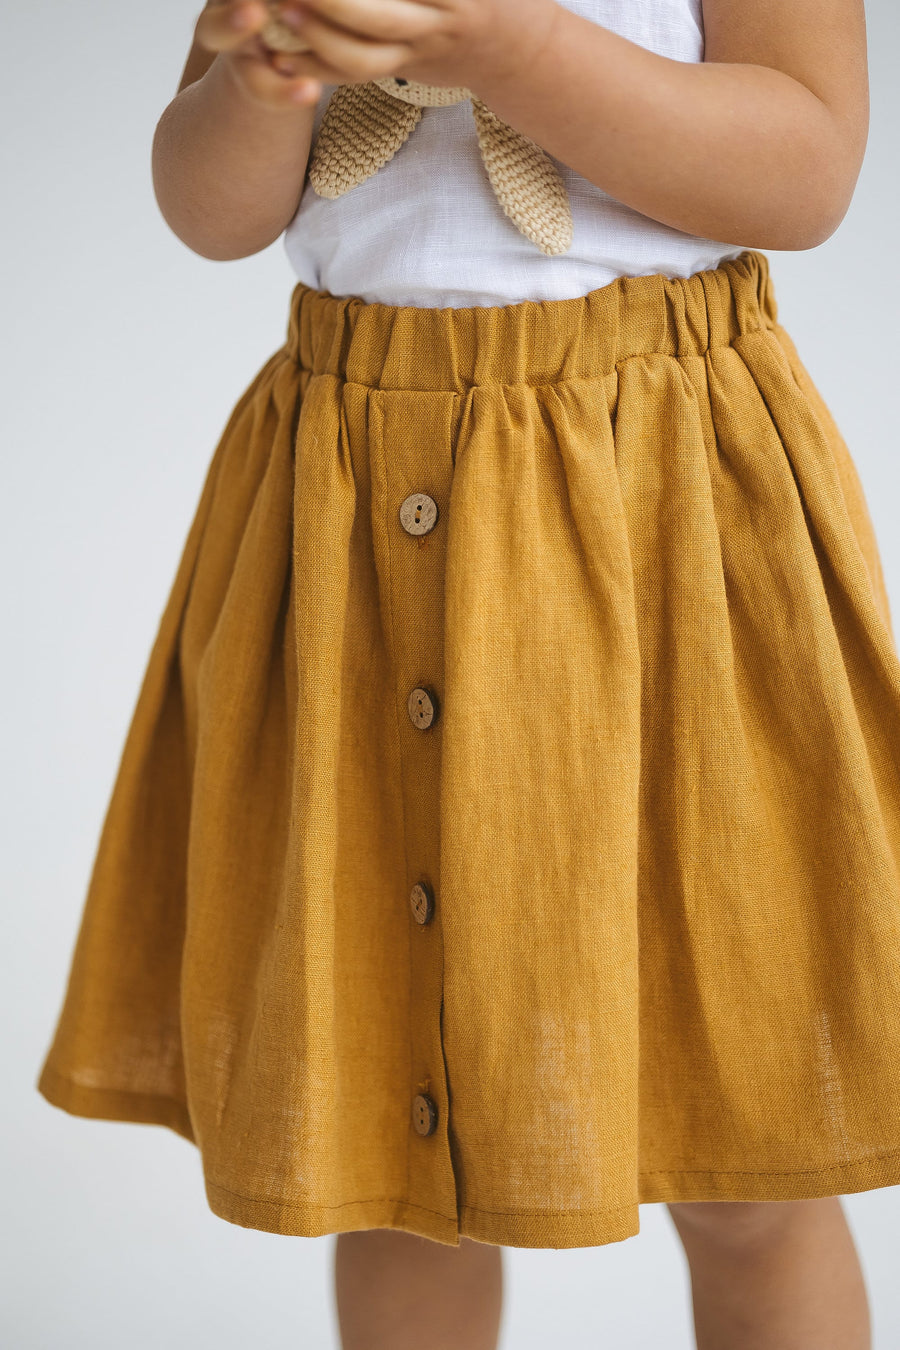 Amber Linen Girls Skirt